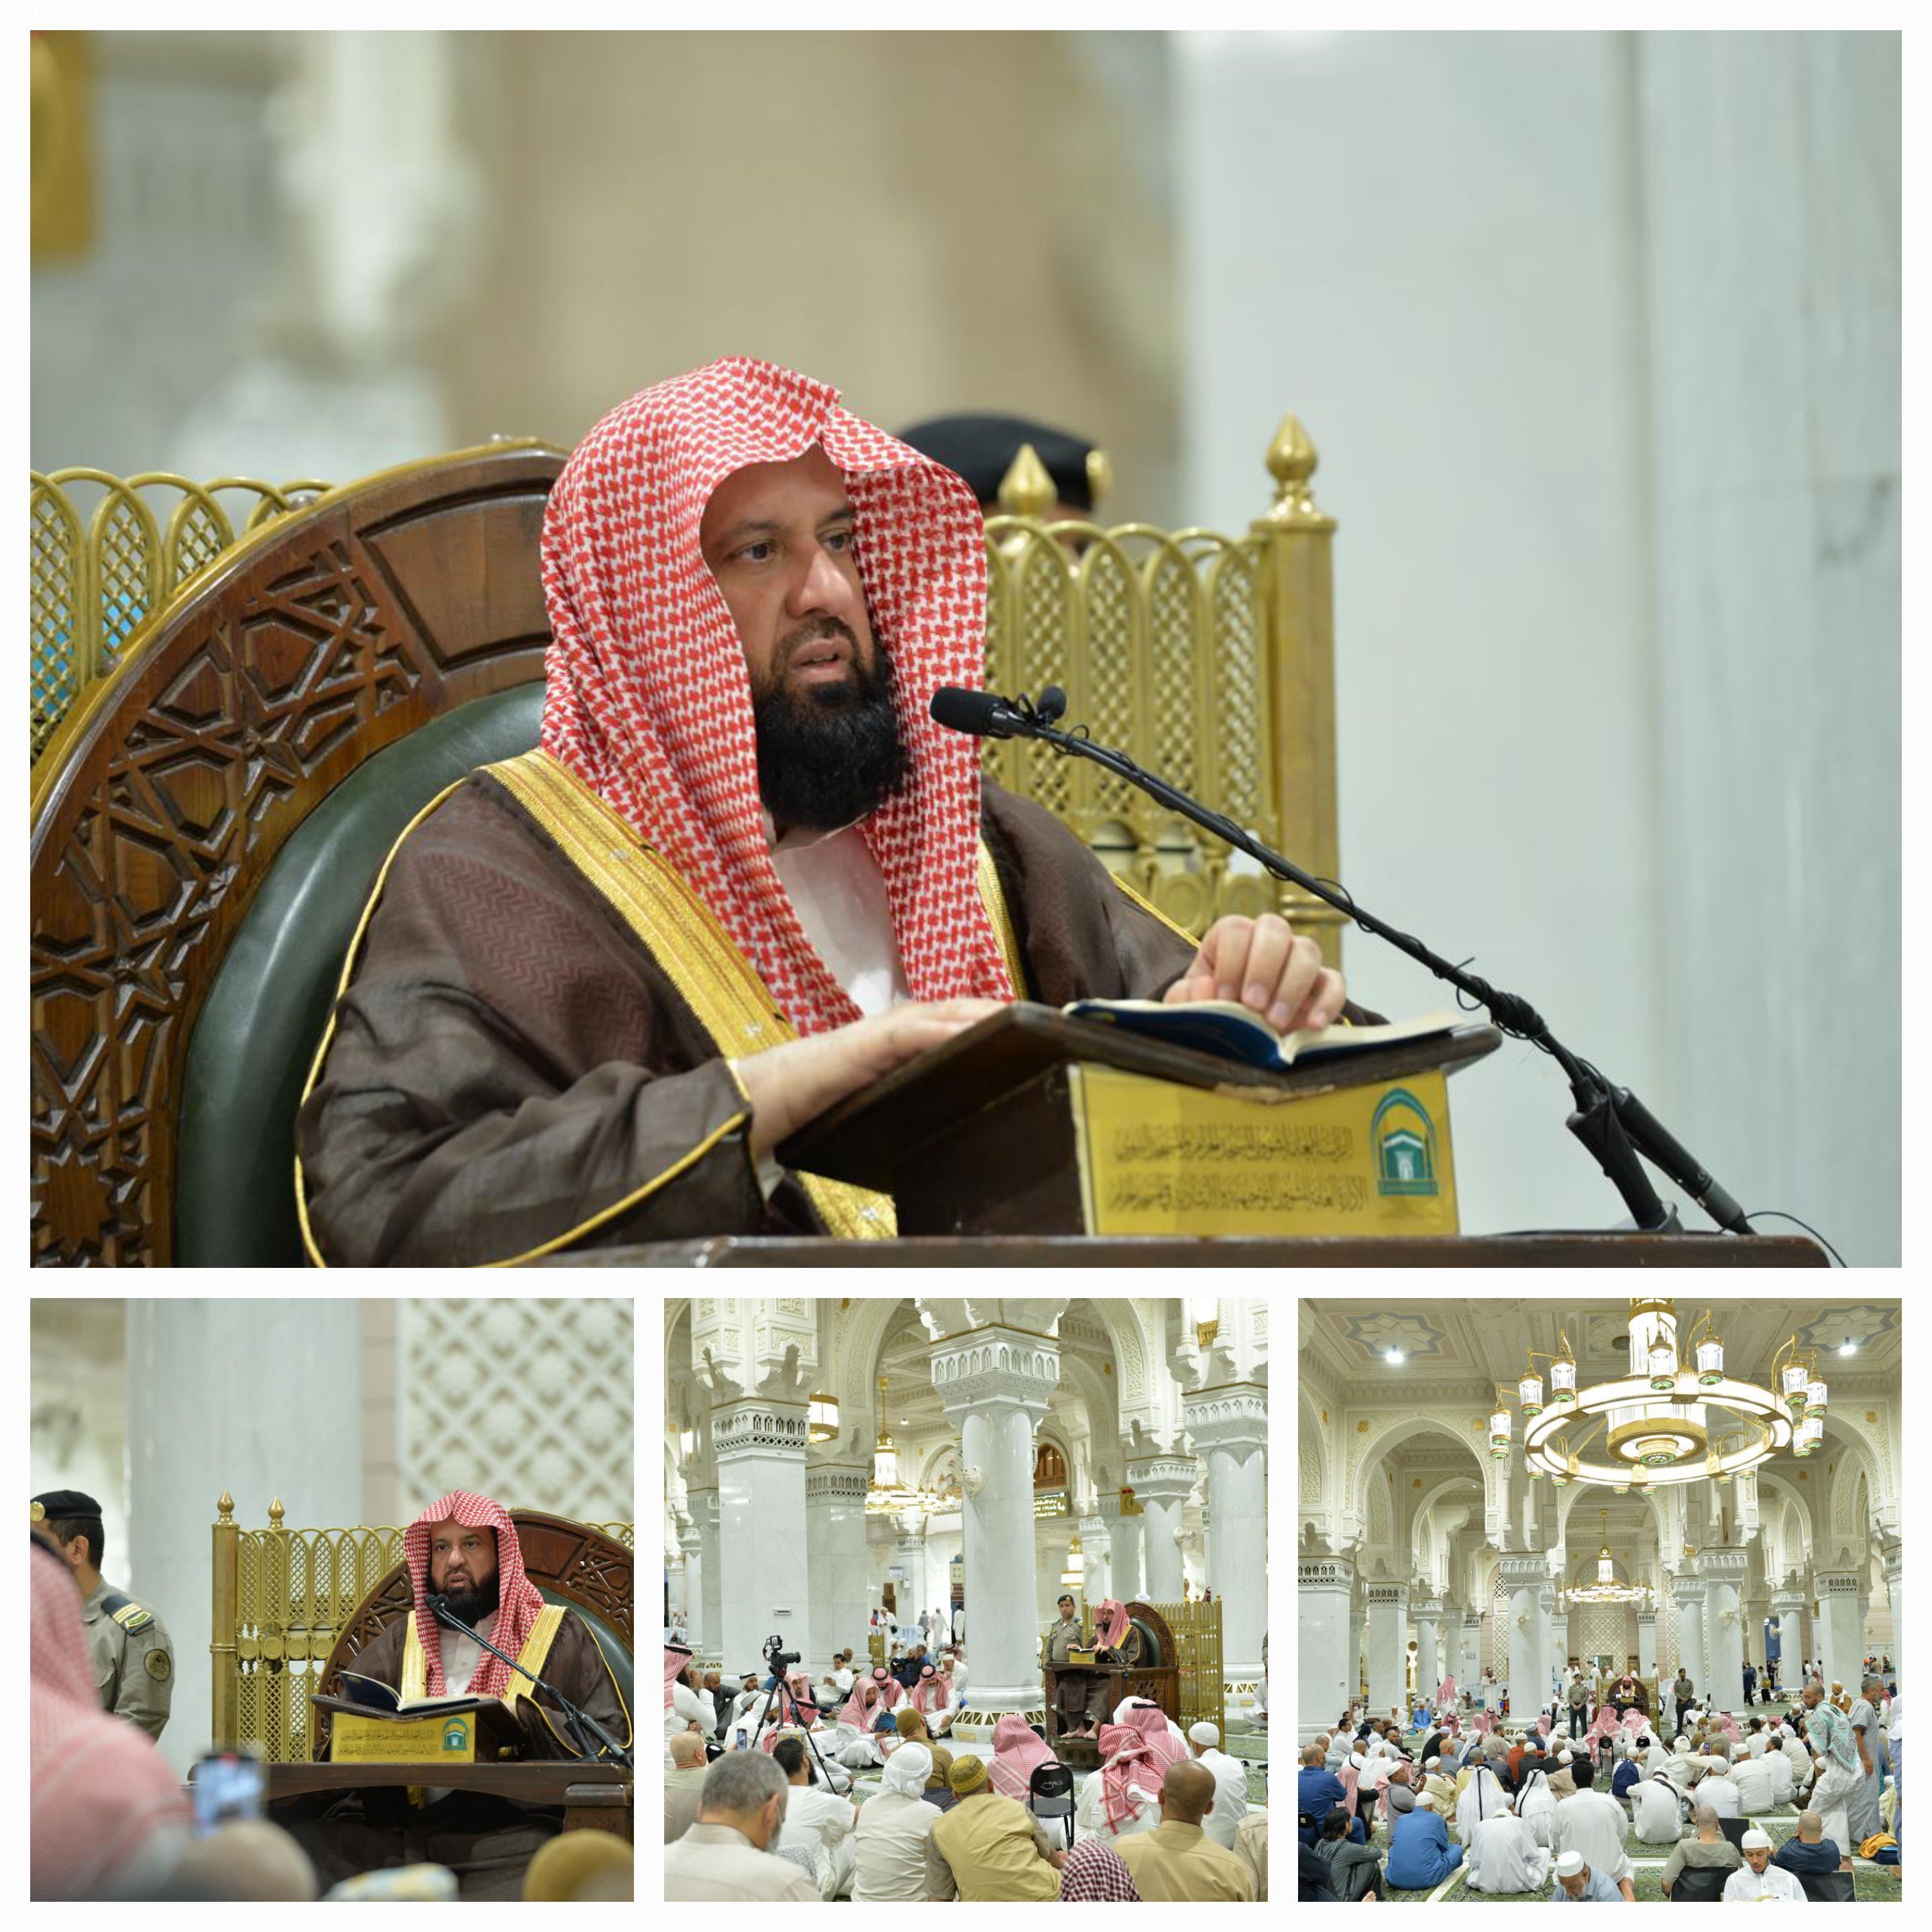 رئيس هيئة الأمر بالمعروف يستأنف دروسه الرمضانية في المسجد الحرام